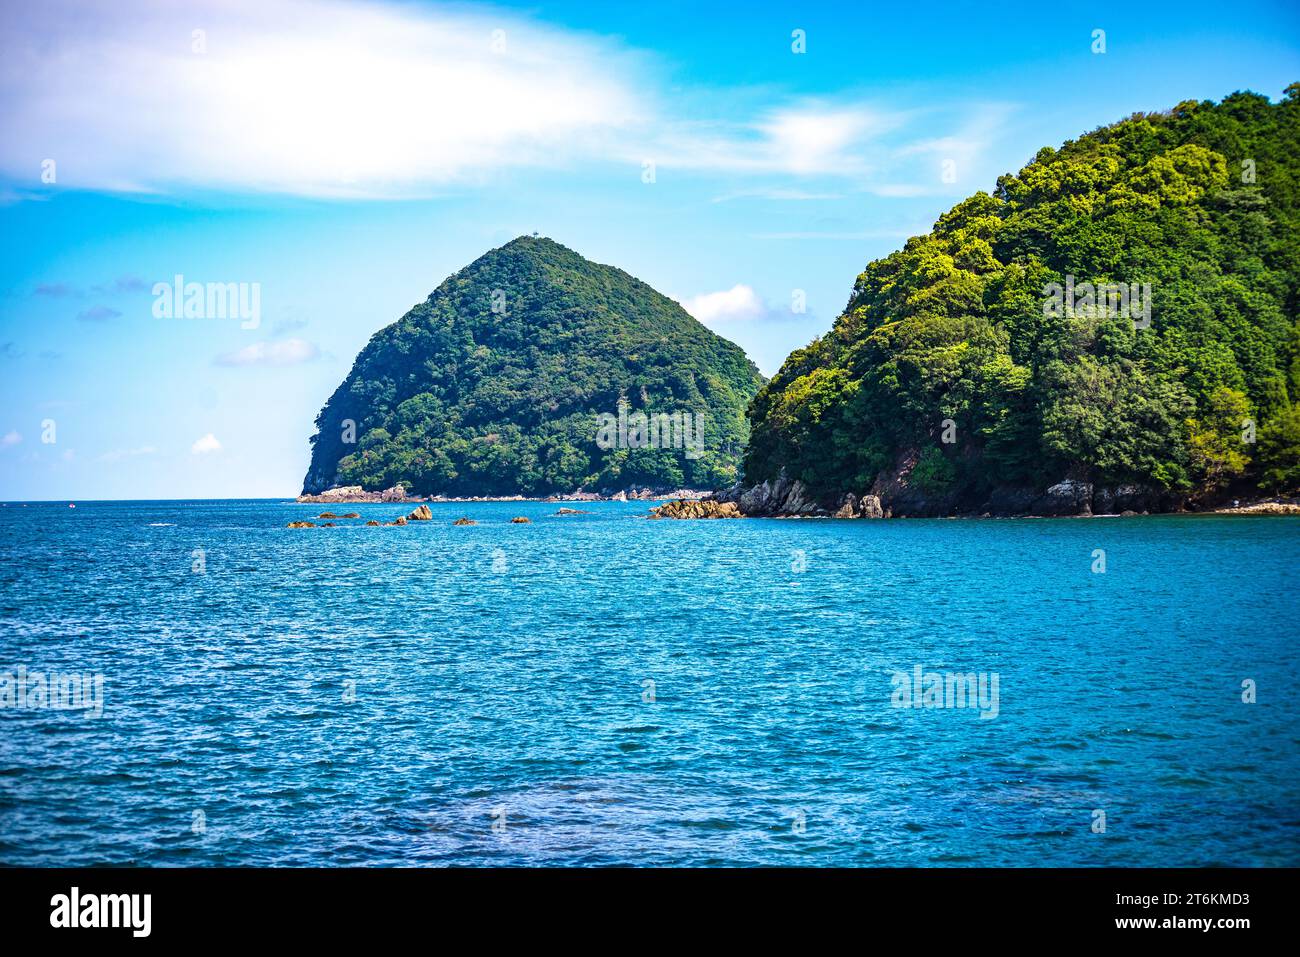 Eine geheimnisvolle Insel, die in der gemäßigten Zone liegt, aber subtropisch aussieht Stockfoto